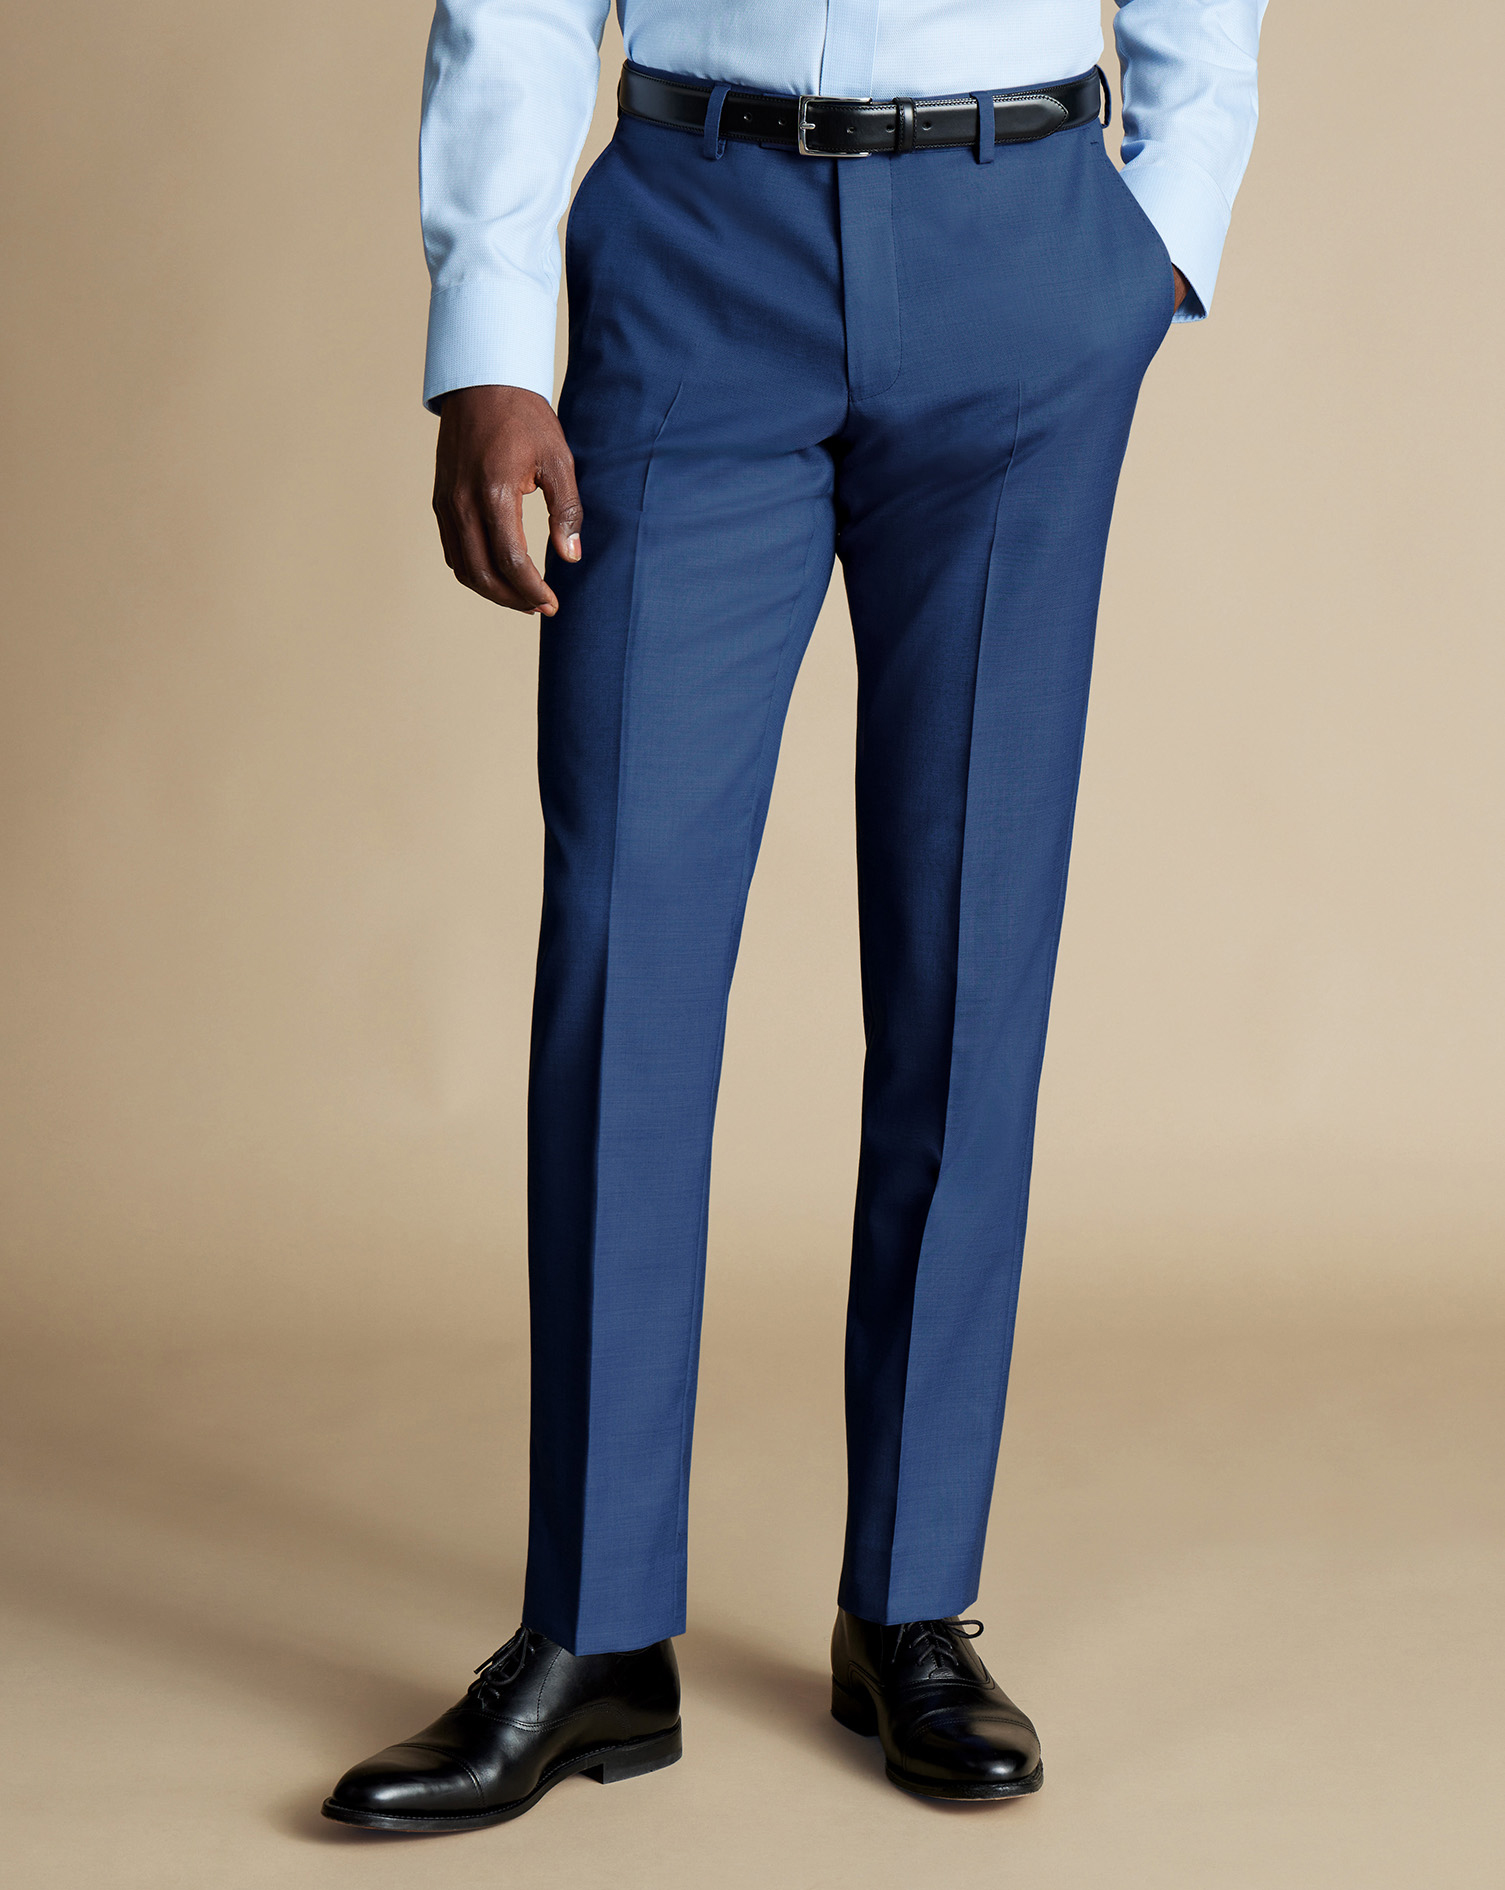 Men's Charles Tyrwhitt Ultimate Performance Sharkskin Suit Trousers - Indigo Blue Size 38/34
